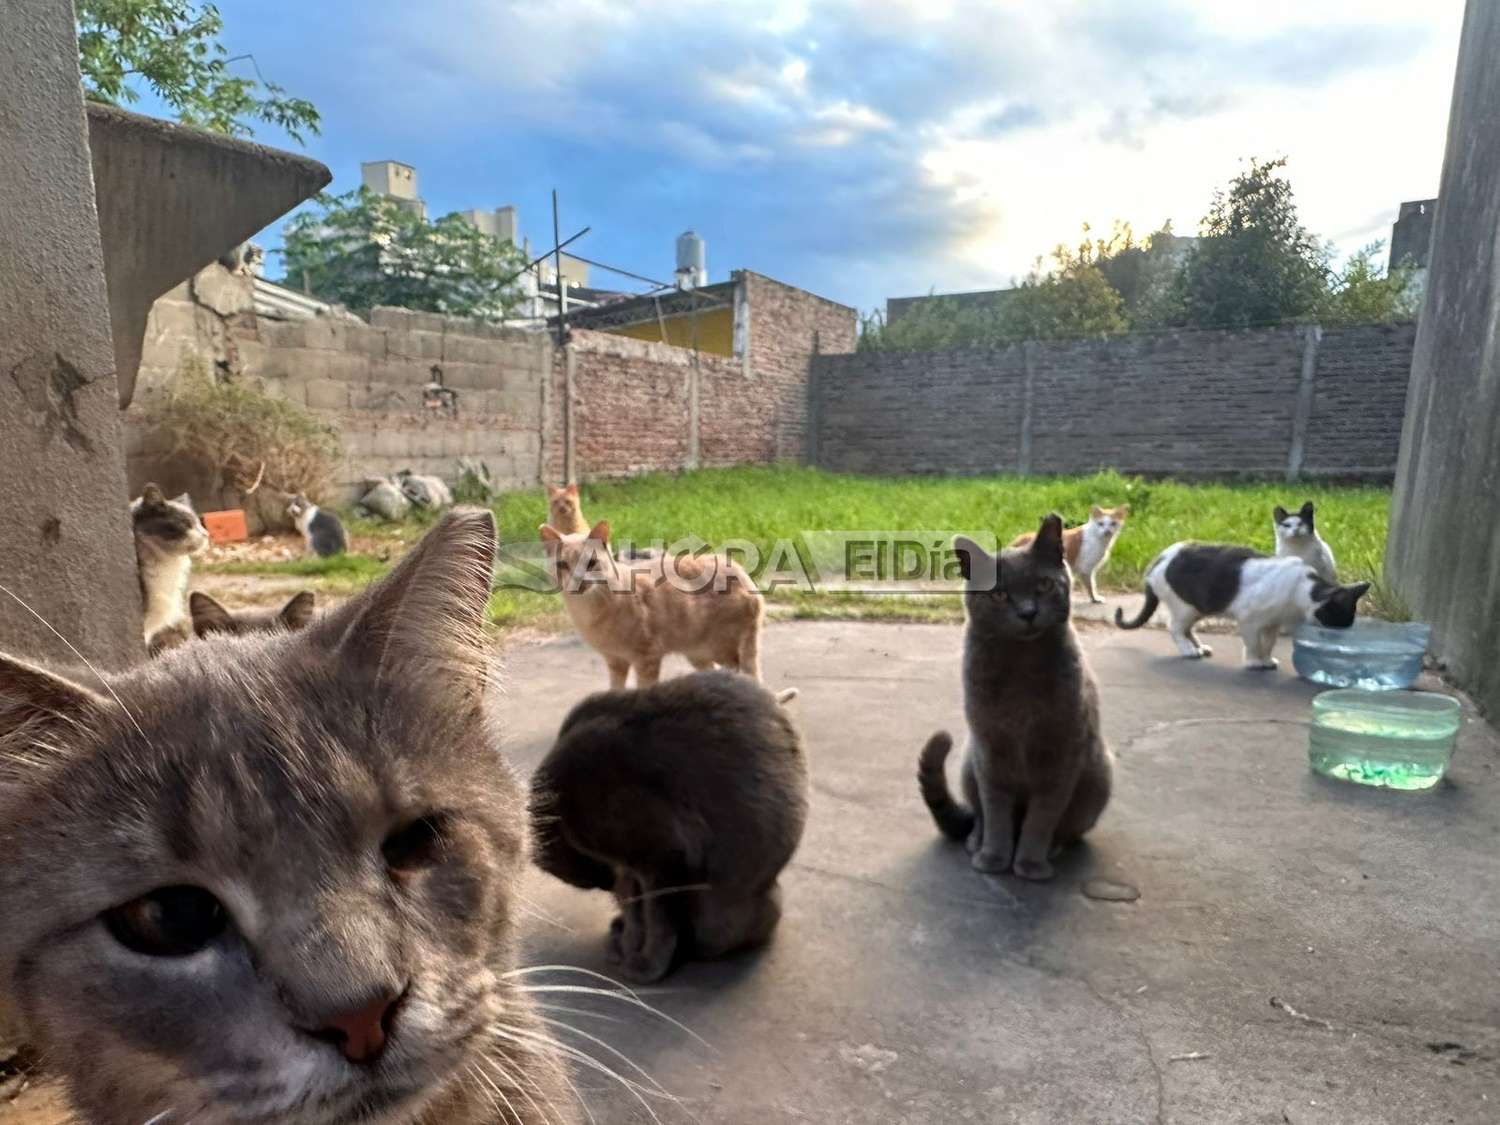 Más de 15 gatitos ferales vivían en una casa pero ahora se vendió: piden ayuda urgente